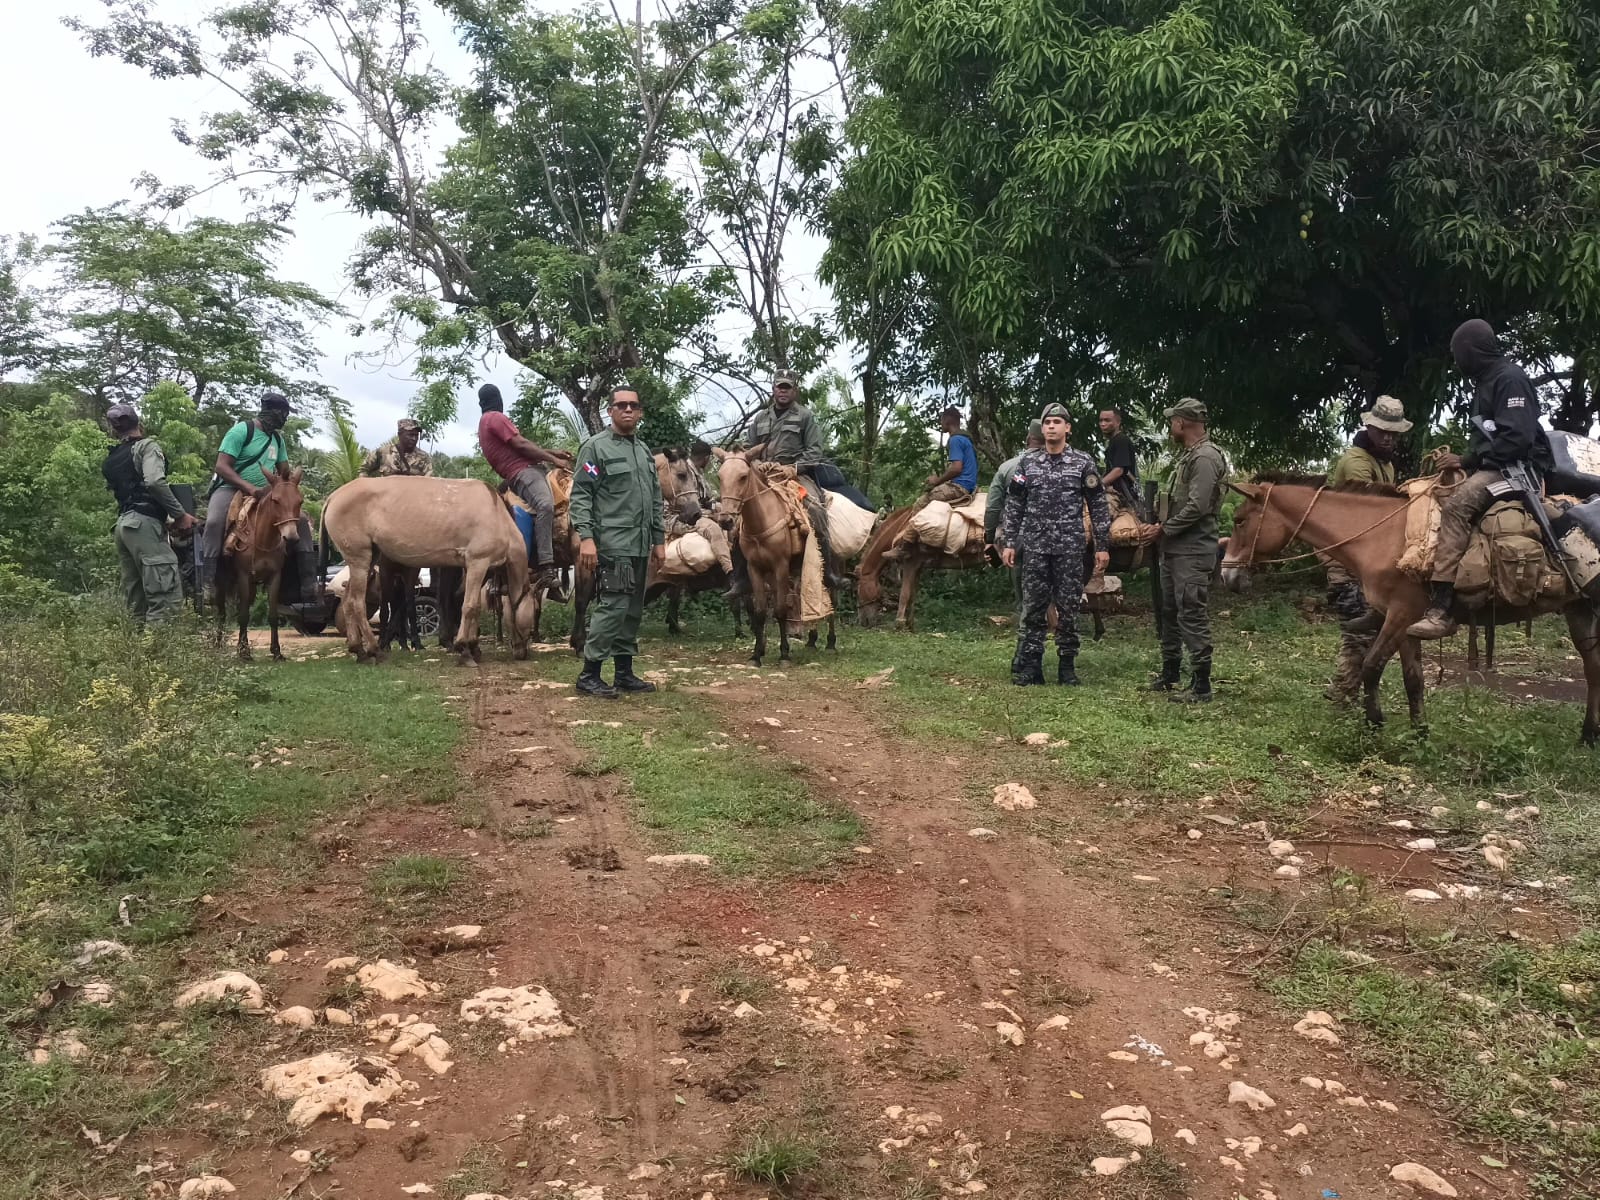 Intervención en Los Haitises concluye con el arresto de 439 desaprensivos que depredaban el parque nacional